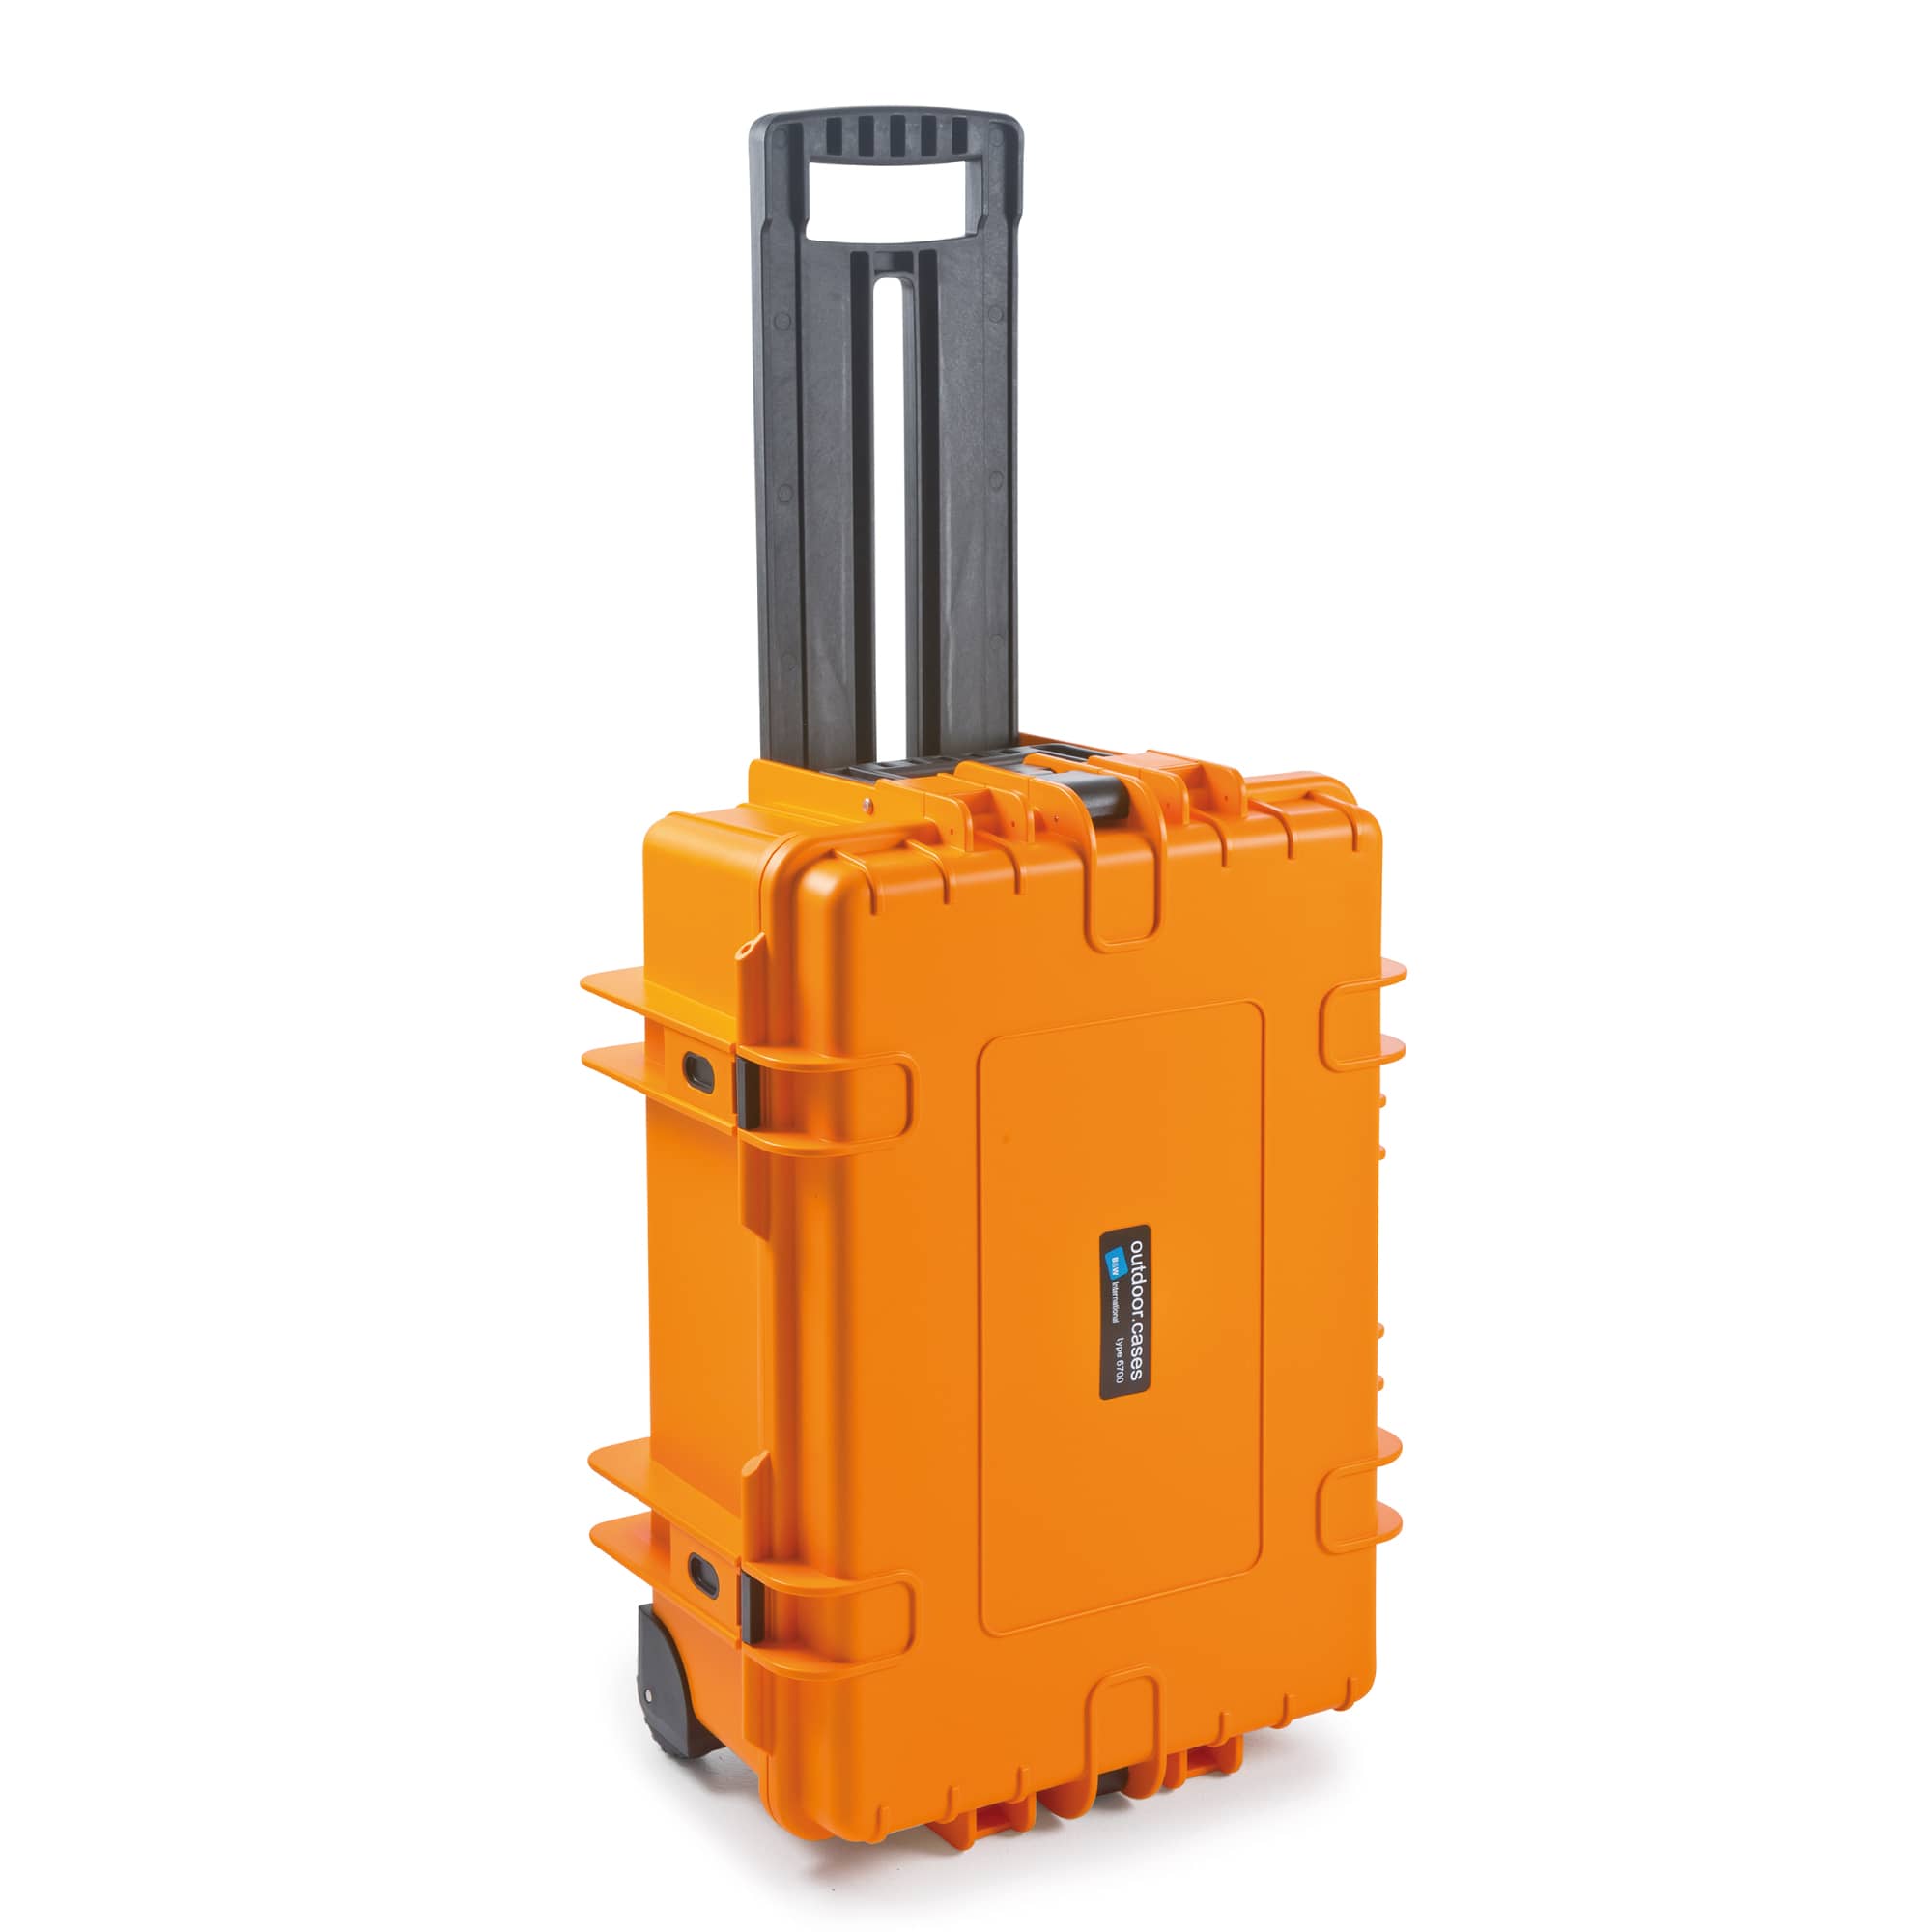 B&W Outdoor Case Typ 6700 orange mit variabler Facheinteilung (RPD)